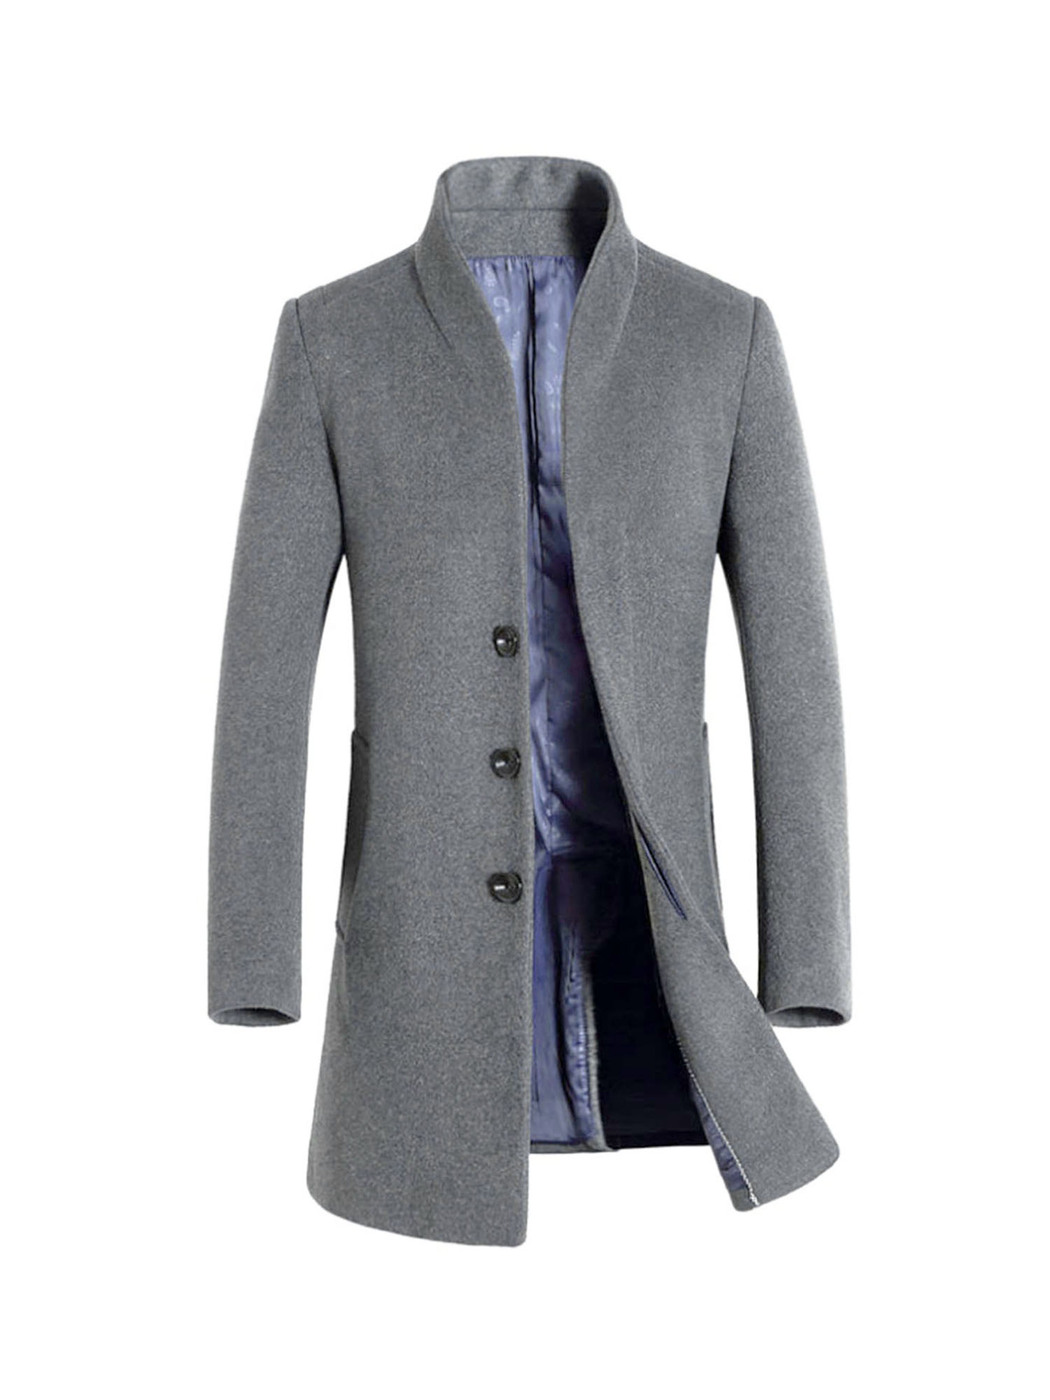 Мужское пальто озон. Пальто мужское Alexander 103a. Пальто мужское зимнее. Пальто мужское зимнее молодежное. Пальто мужское зимнее длинное.